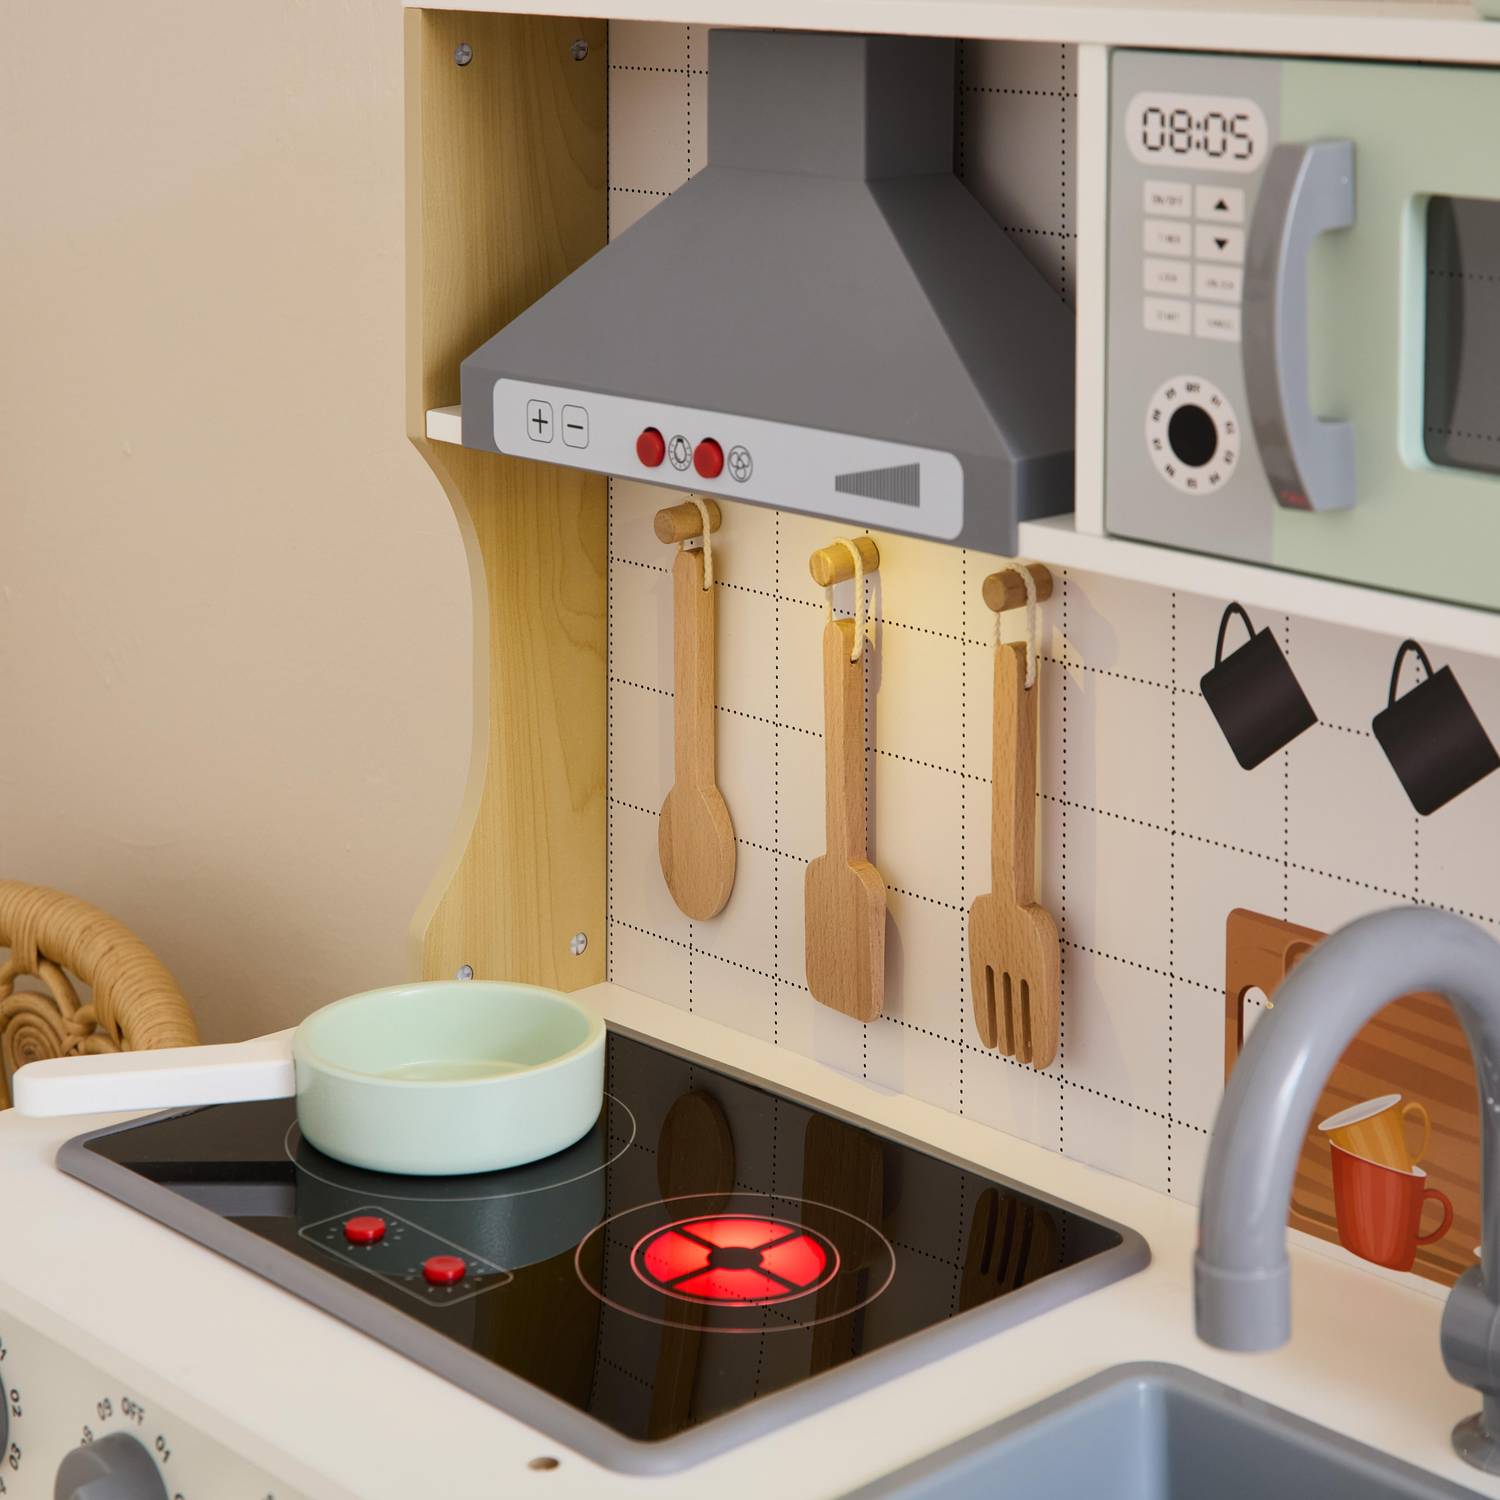 Pannello cucina per bambini, accessori inclusi, cappa, piano cottura, microonde elettronico Photo5